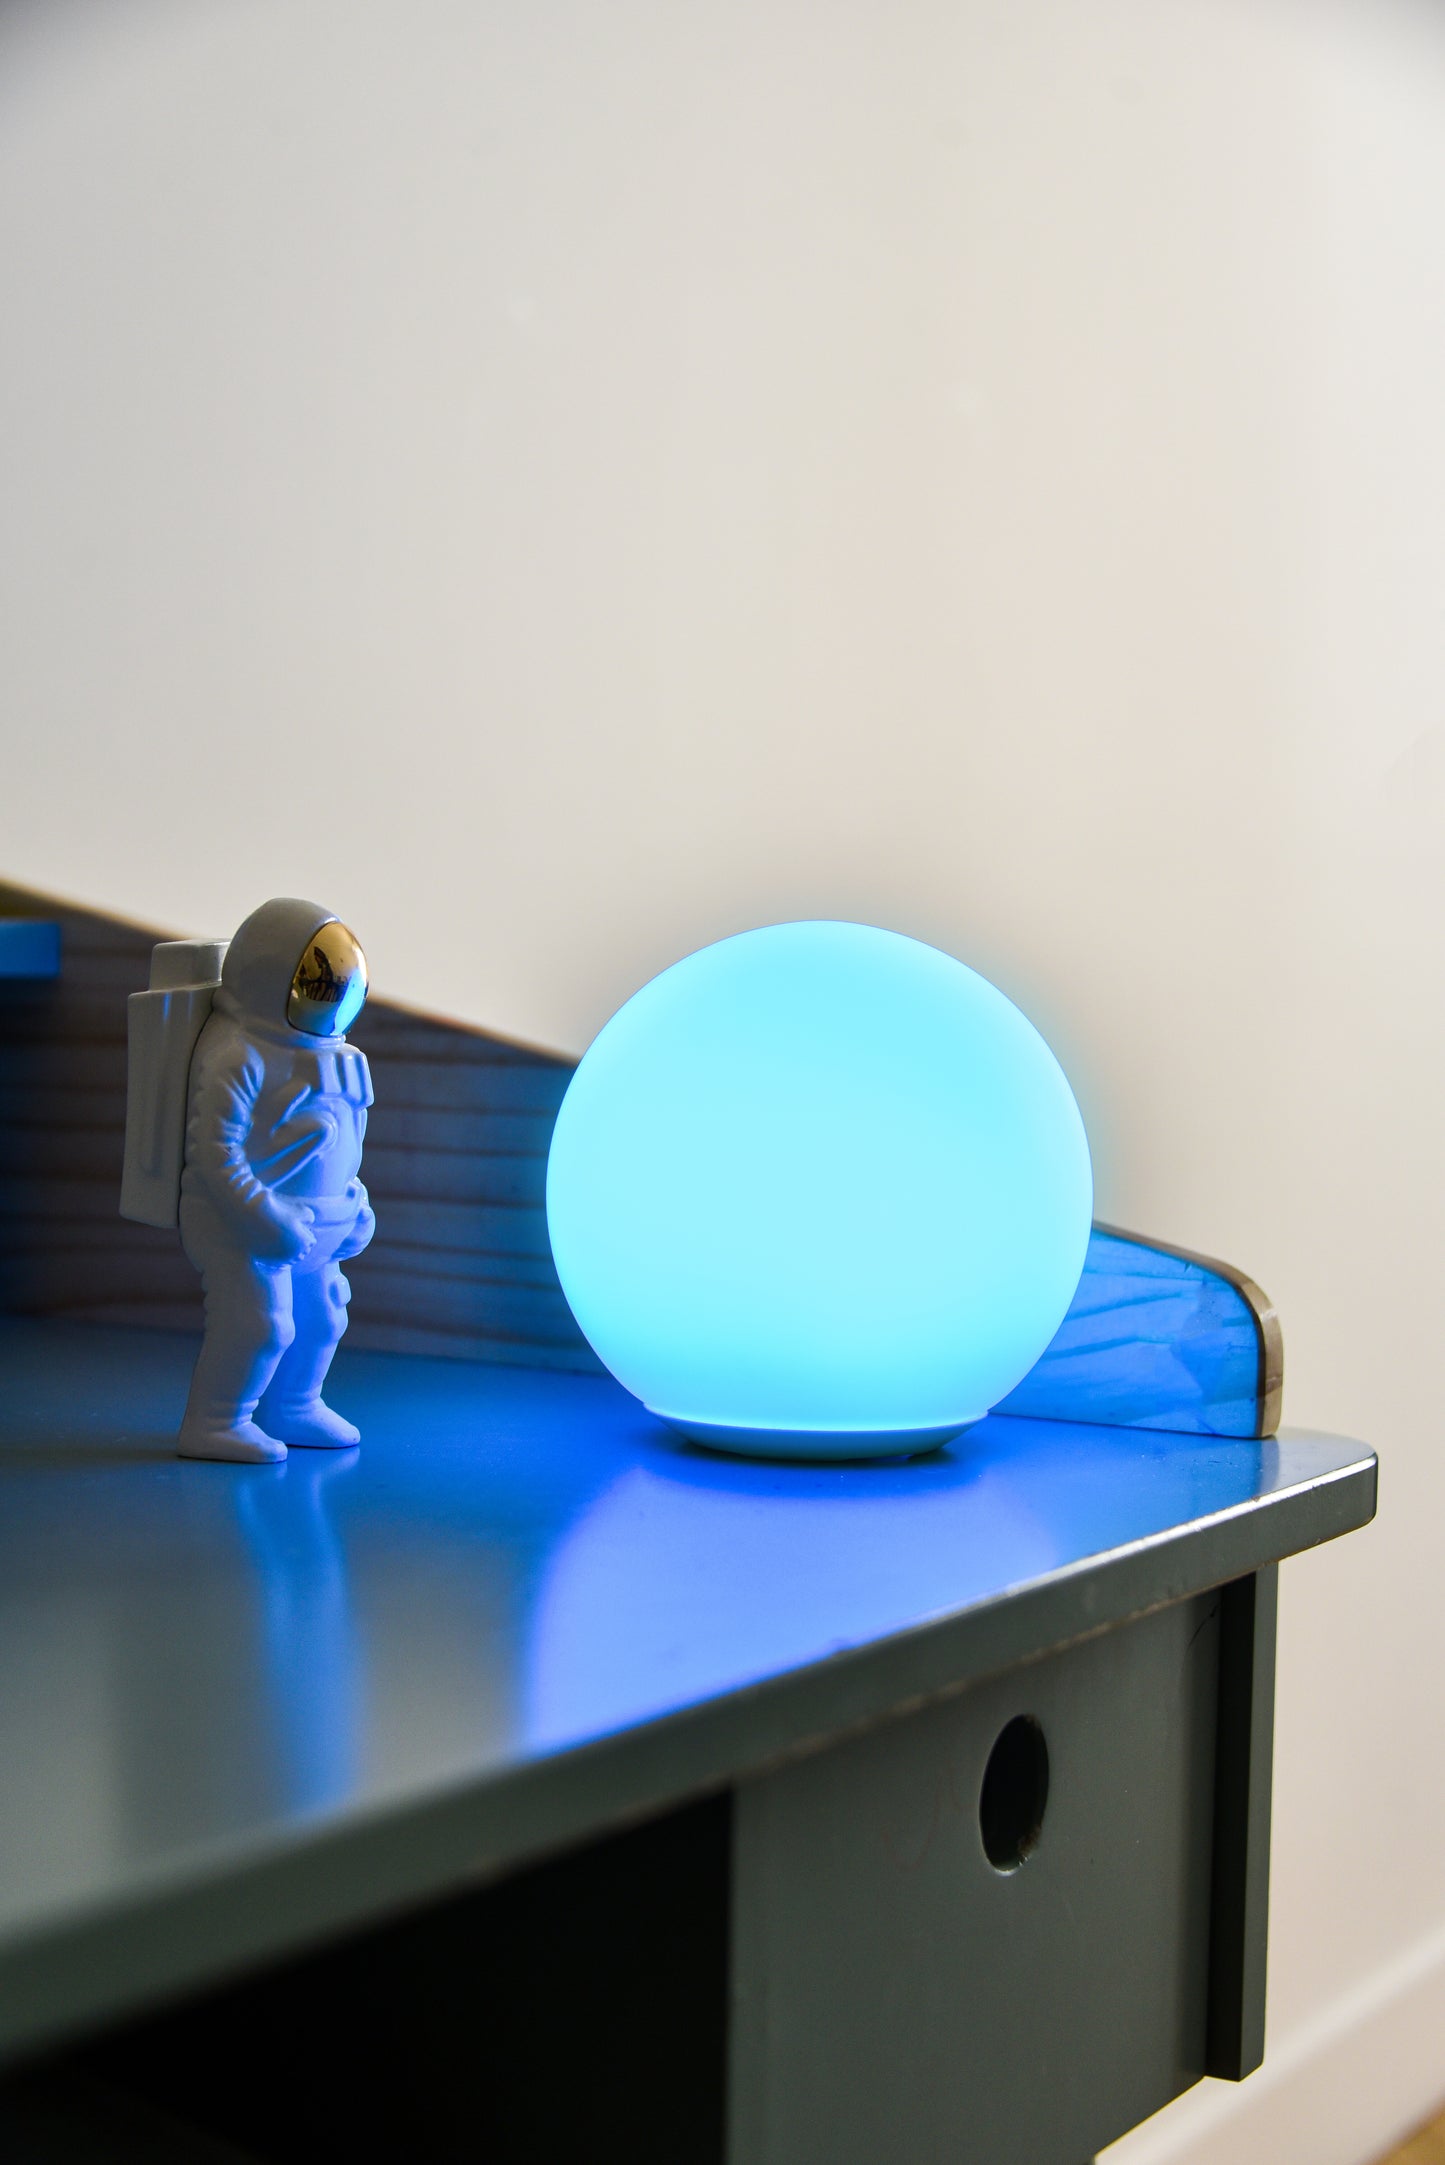 Une sensolight de couleur bleu positionner sur un bureau à coté d'un petit jouet astronaute. On dirait que la lampe Sensolight représente la planète terre.